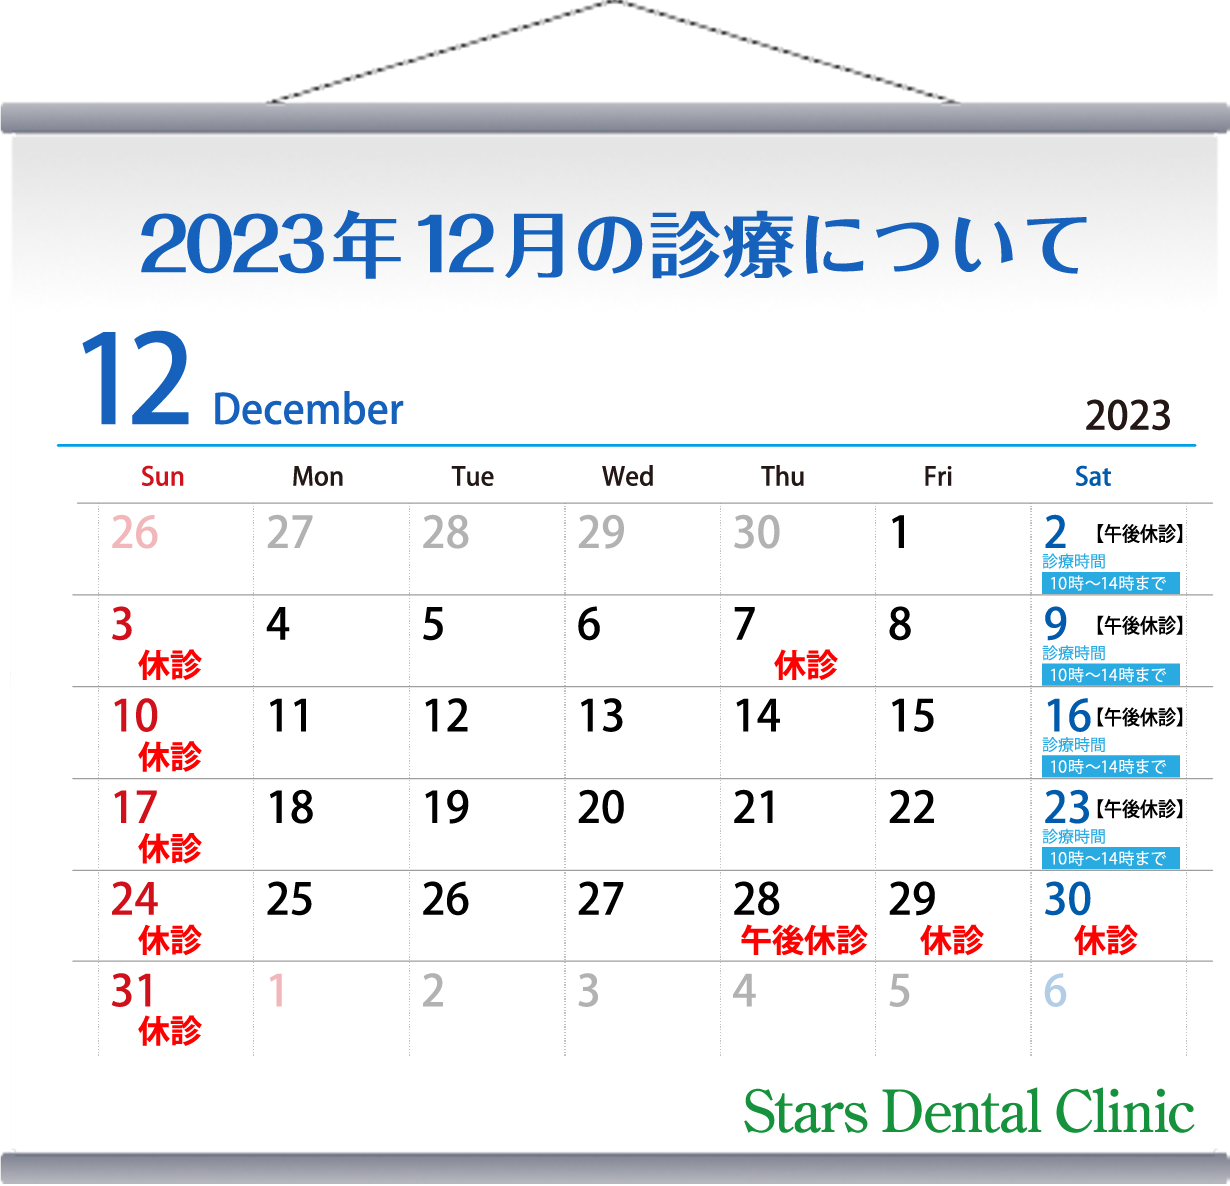 2023年12月の診療について